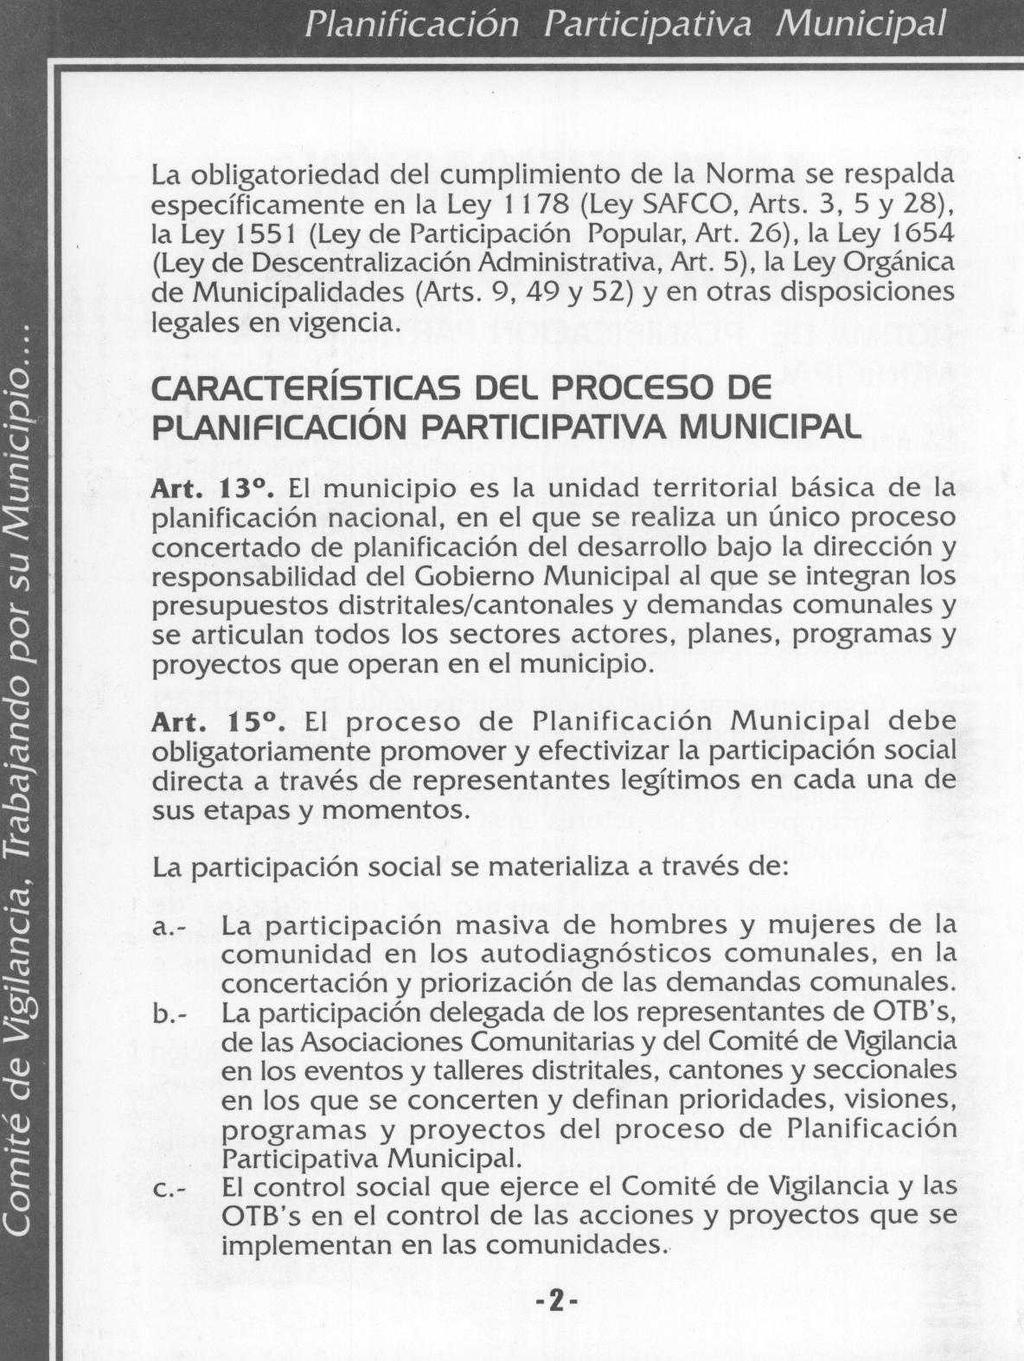 La obligatoriedad del cumplimiento de la Norma se respalda específicamente en la Ley 1 178 (Ley SAFCO, Arts. 3, 5 y 28), la Ley 1551 (Ley de Participación Popular, Art.